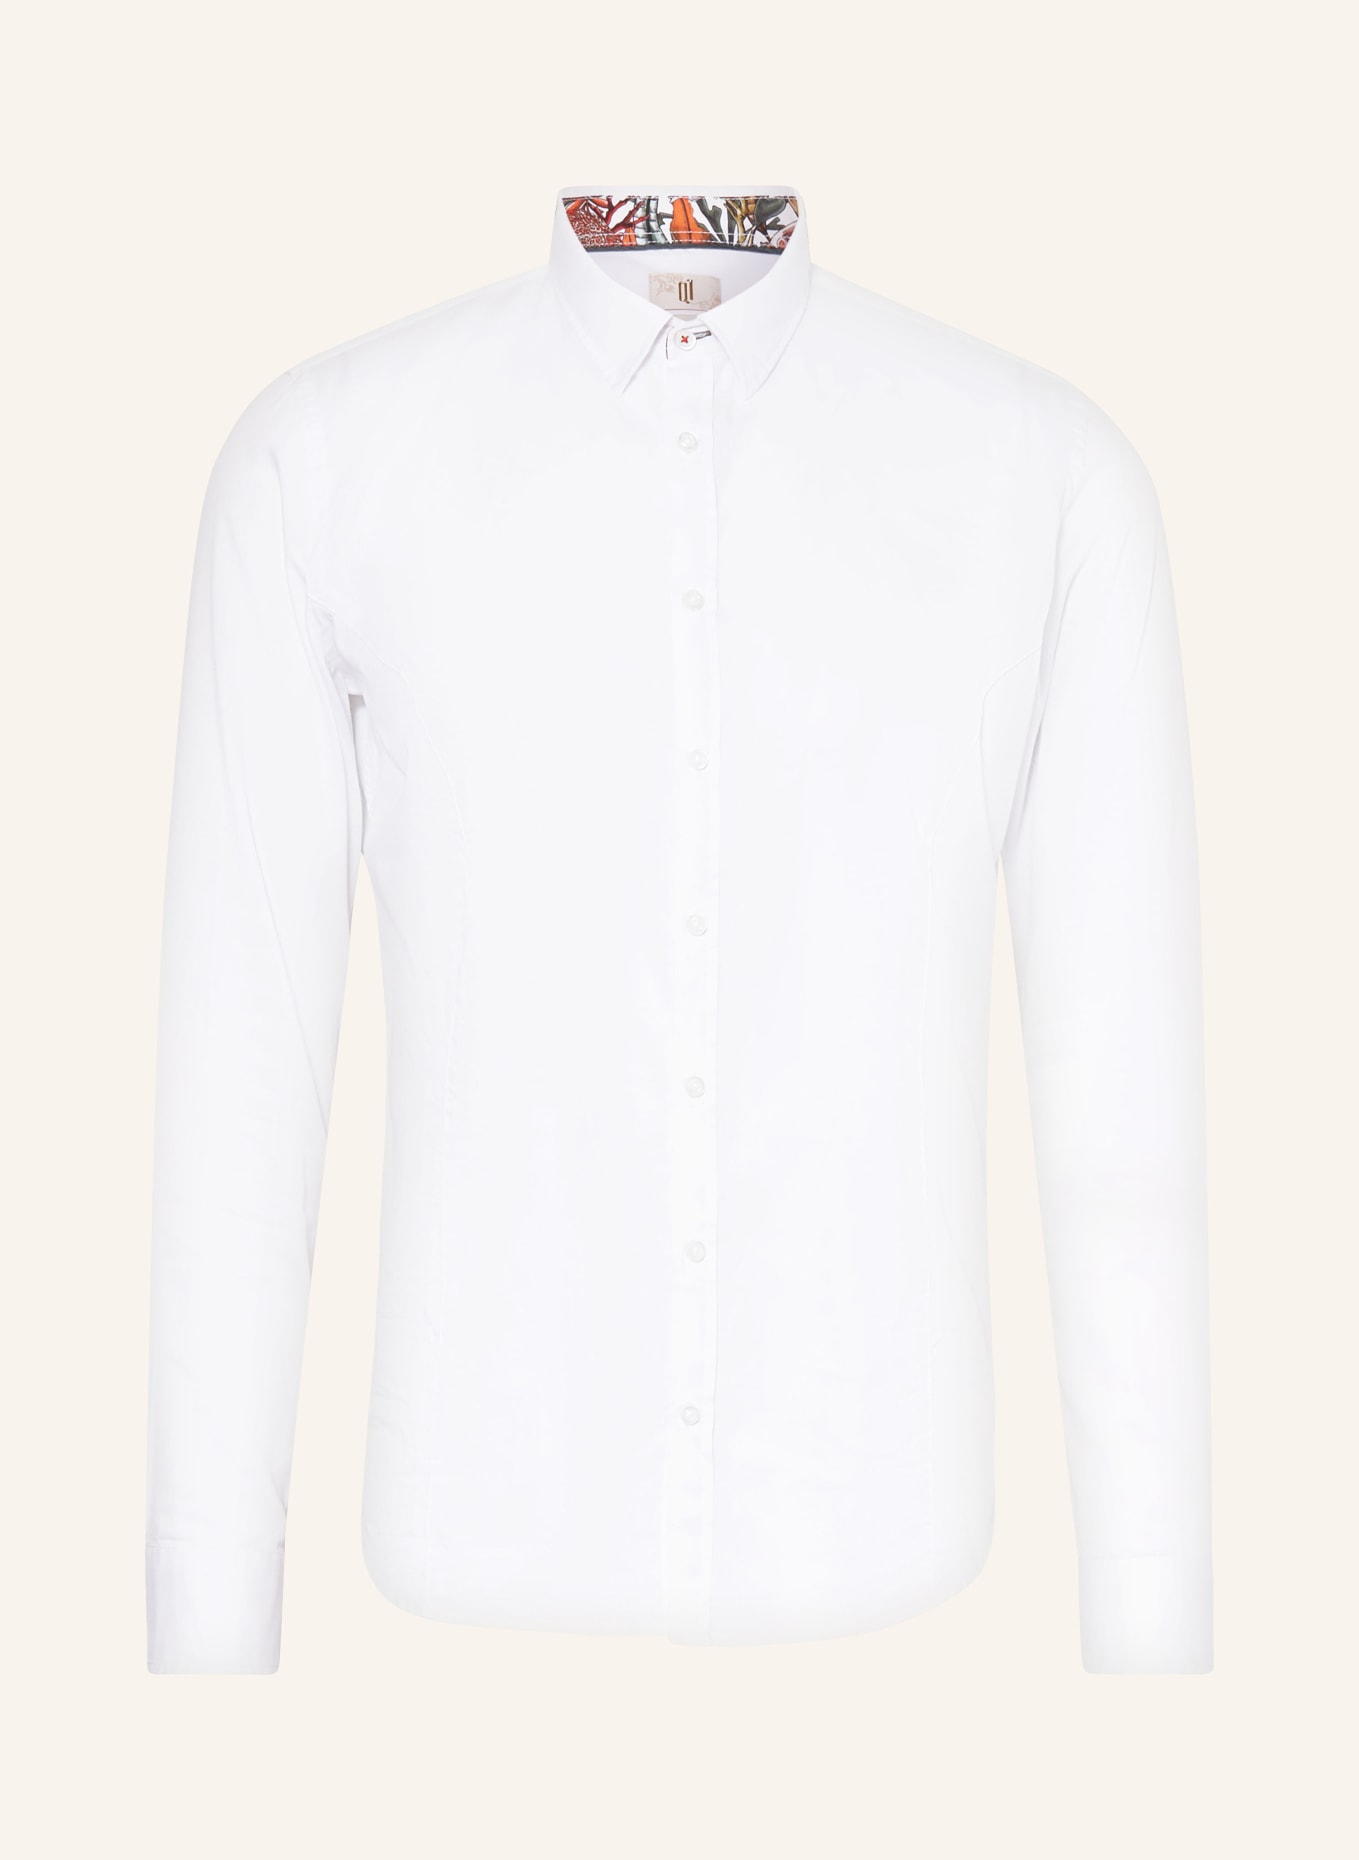 Q1 Manufaktur Shirt premium fit, Color: WHITE (Image 1)